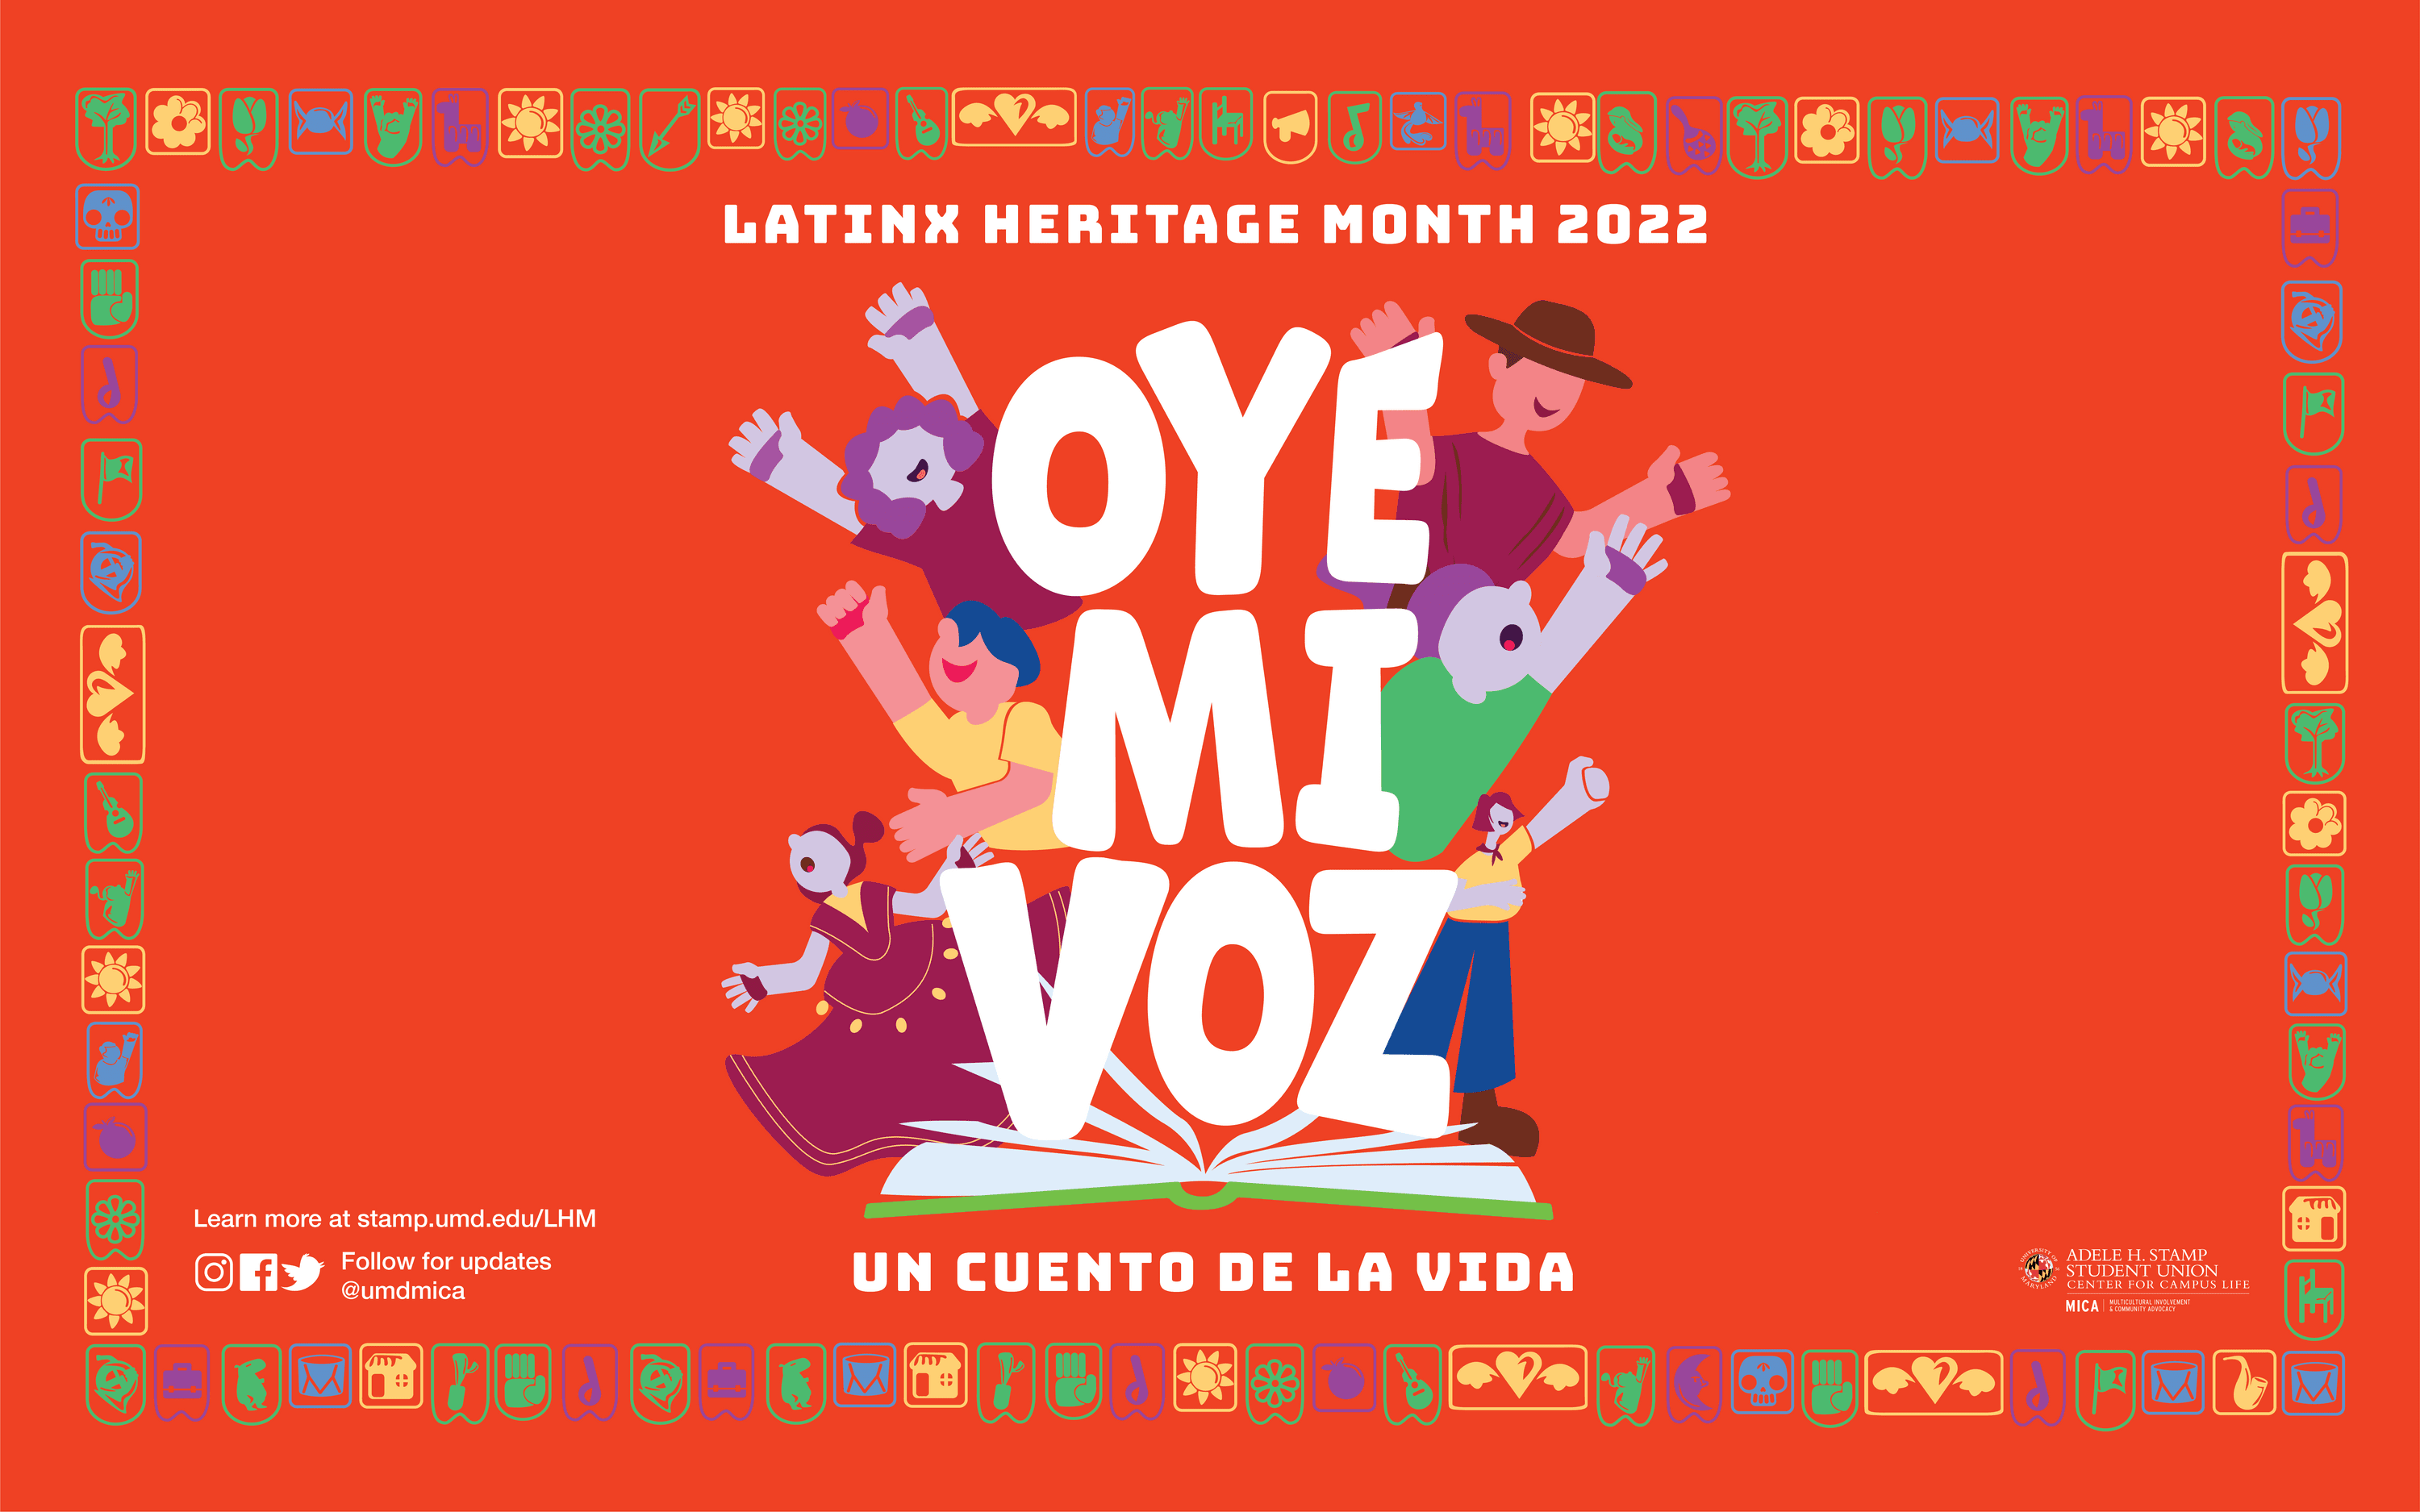 Orange background with papel picado border. The text at the center reads: Latinx Heritage Month 2022. Oye Mi Voz: Un Cuento De La Vida